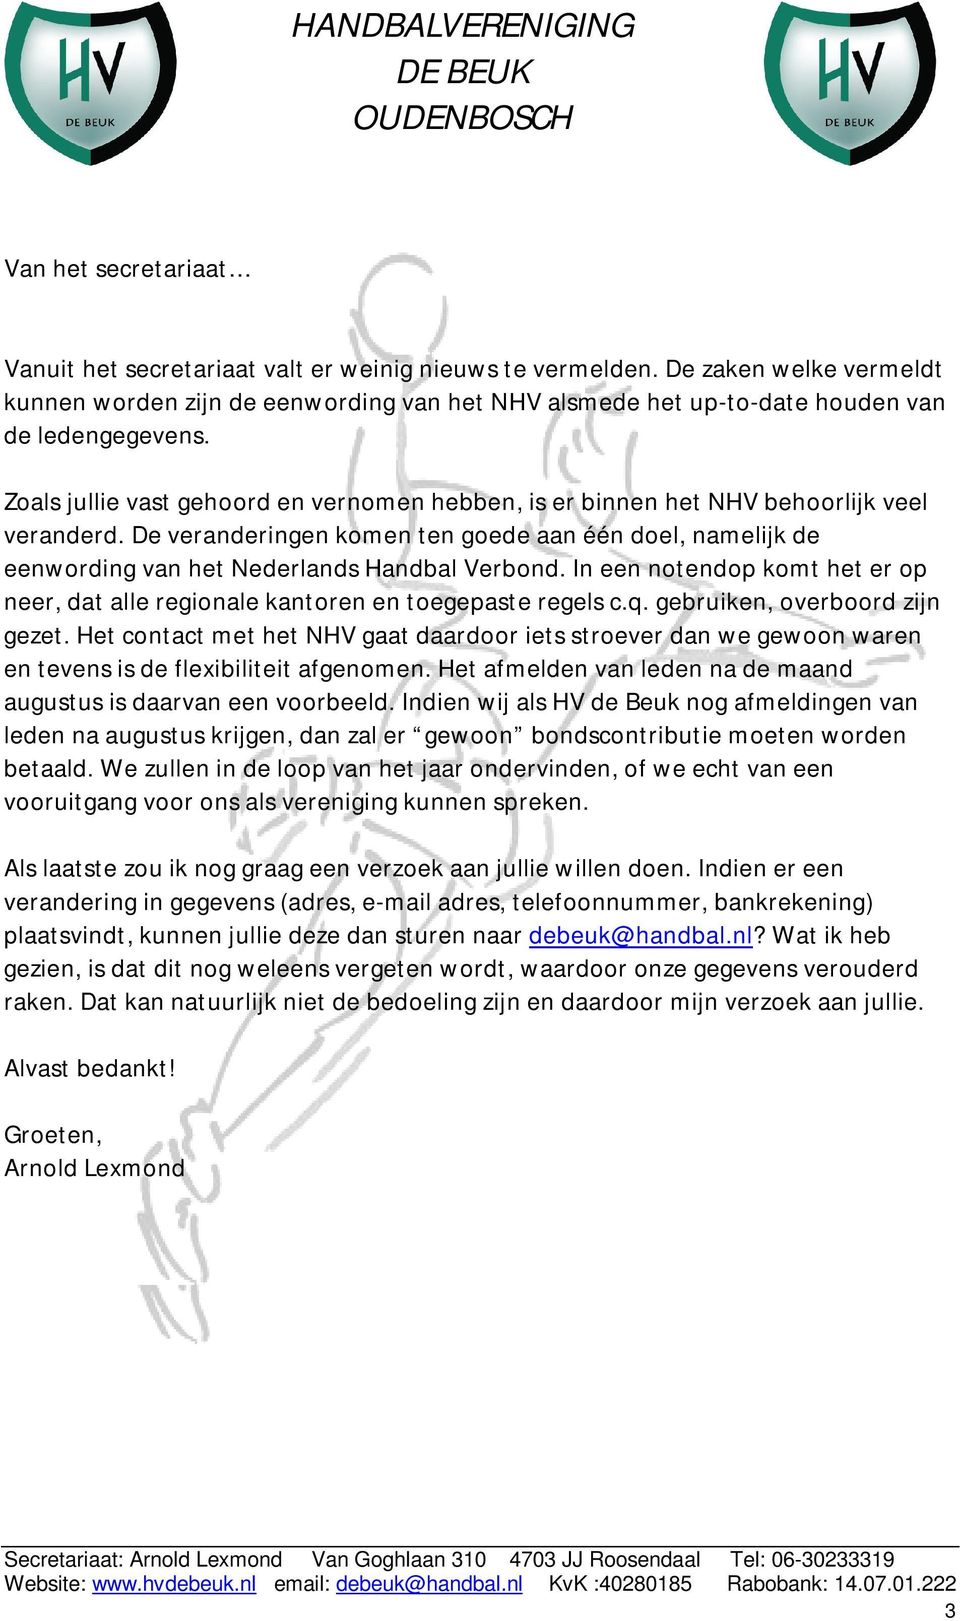 Zoals jullie vast gehoord en vernomen hebben, is er binnen het NHV behoorlijk veel veranderd. De veranderingen komen ten goede aan één doel, namelijk de eenwording van het Nederlands Handbal Verbond.